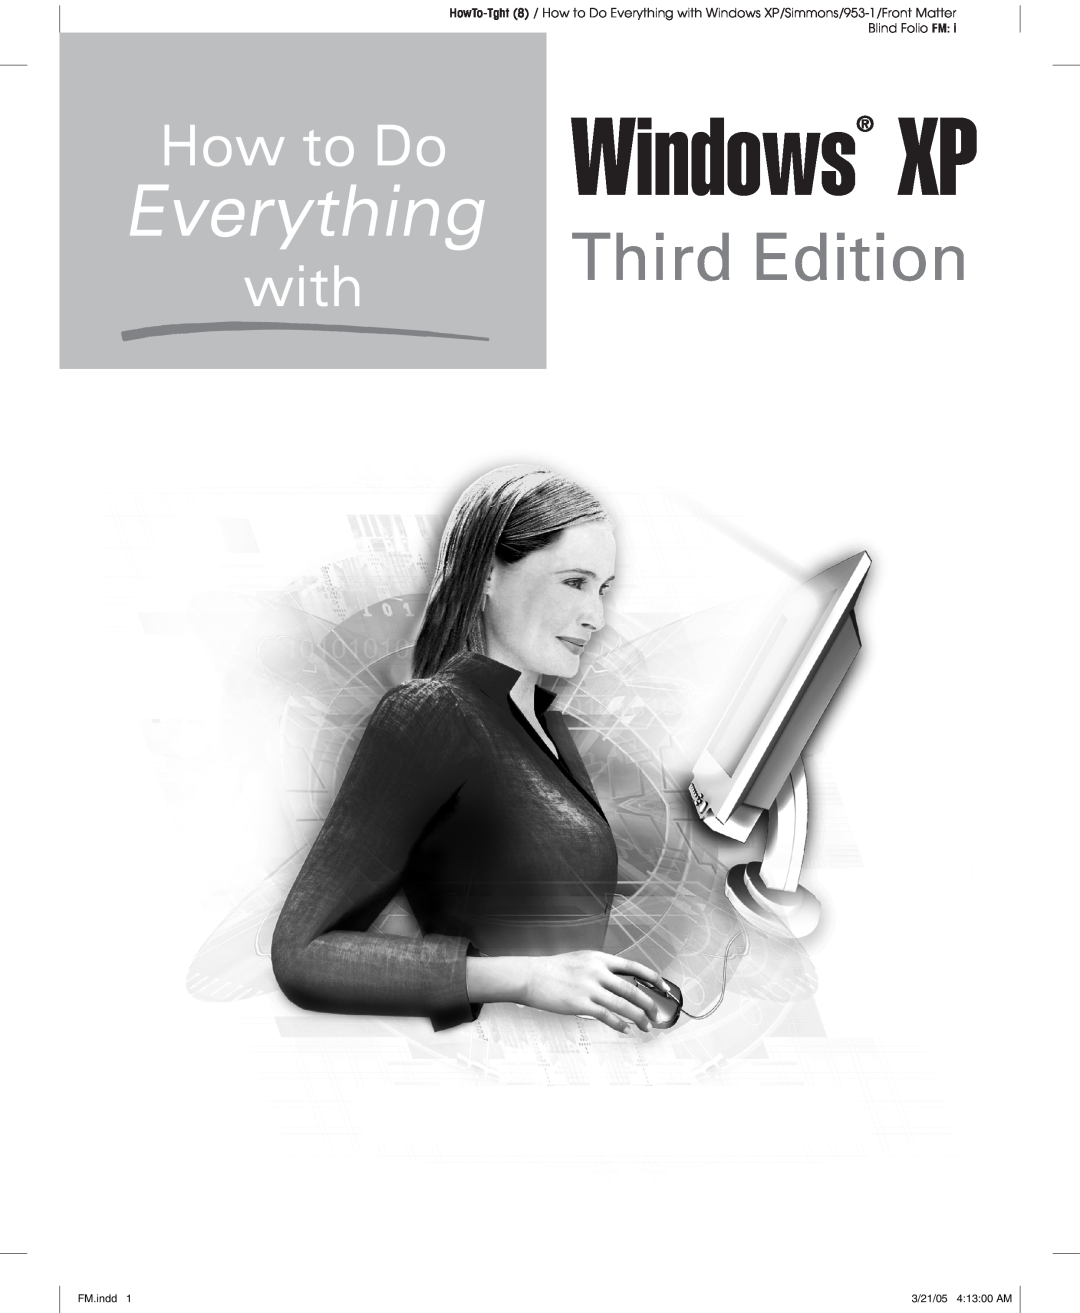 Microsoft Xp manual Third Edition, Windows XP, FM.indd, 3/21/05 41300 AM 